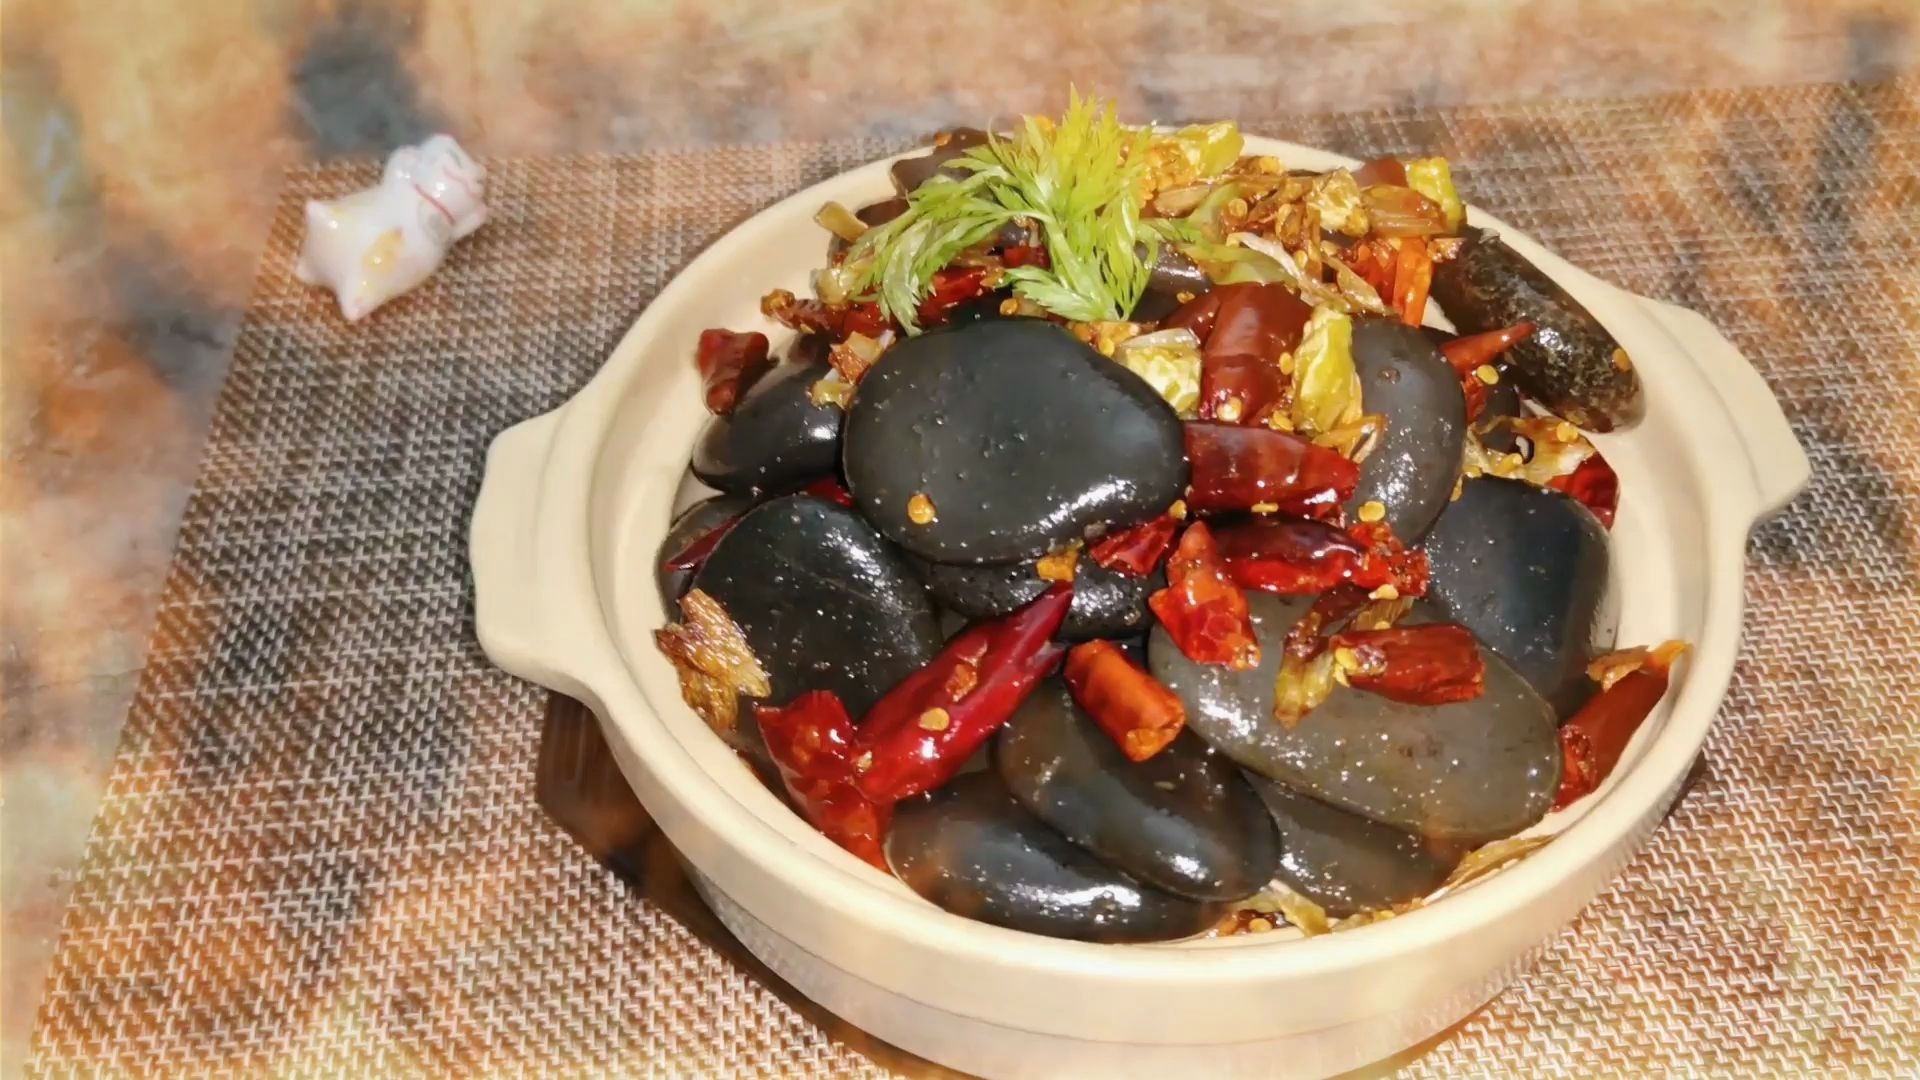 Đá cuội xào tỏi ớt - đặc sản kì lạ ở Trung Quốc - Ảnh 3.